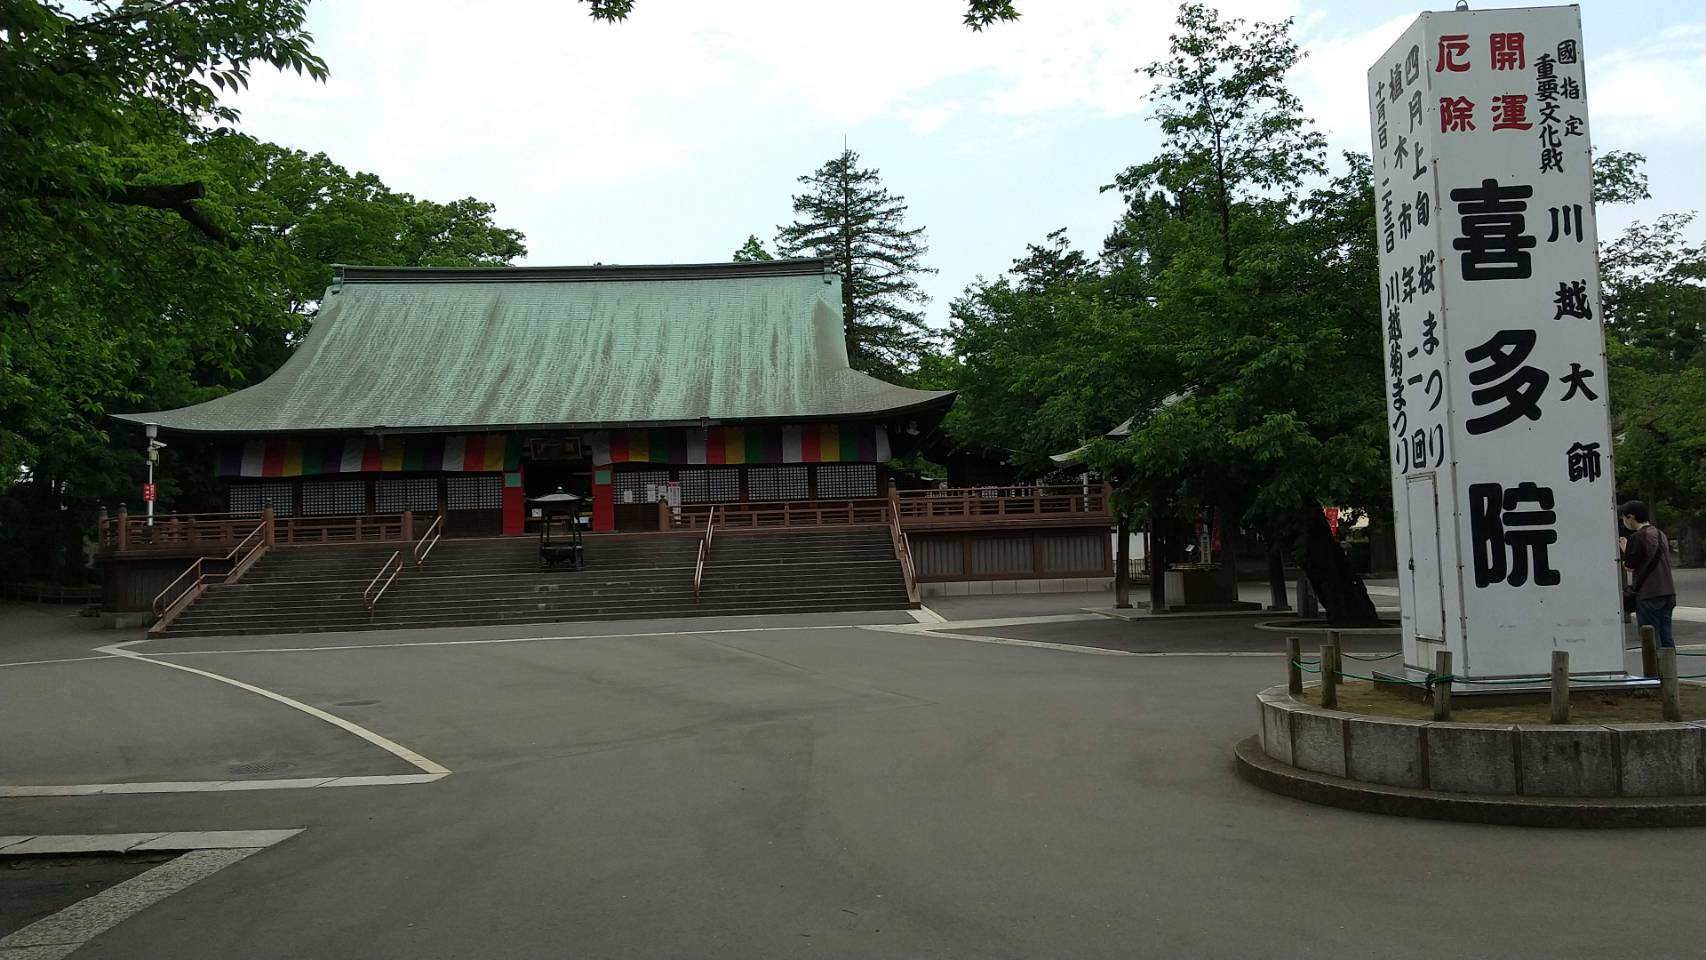 Kita-in Temple